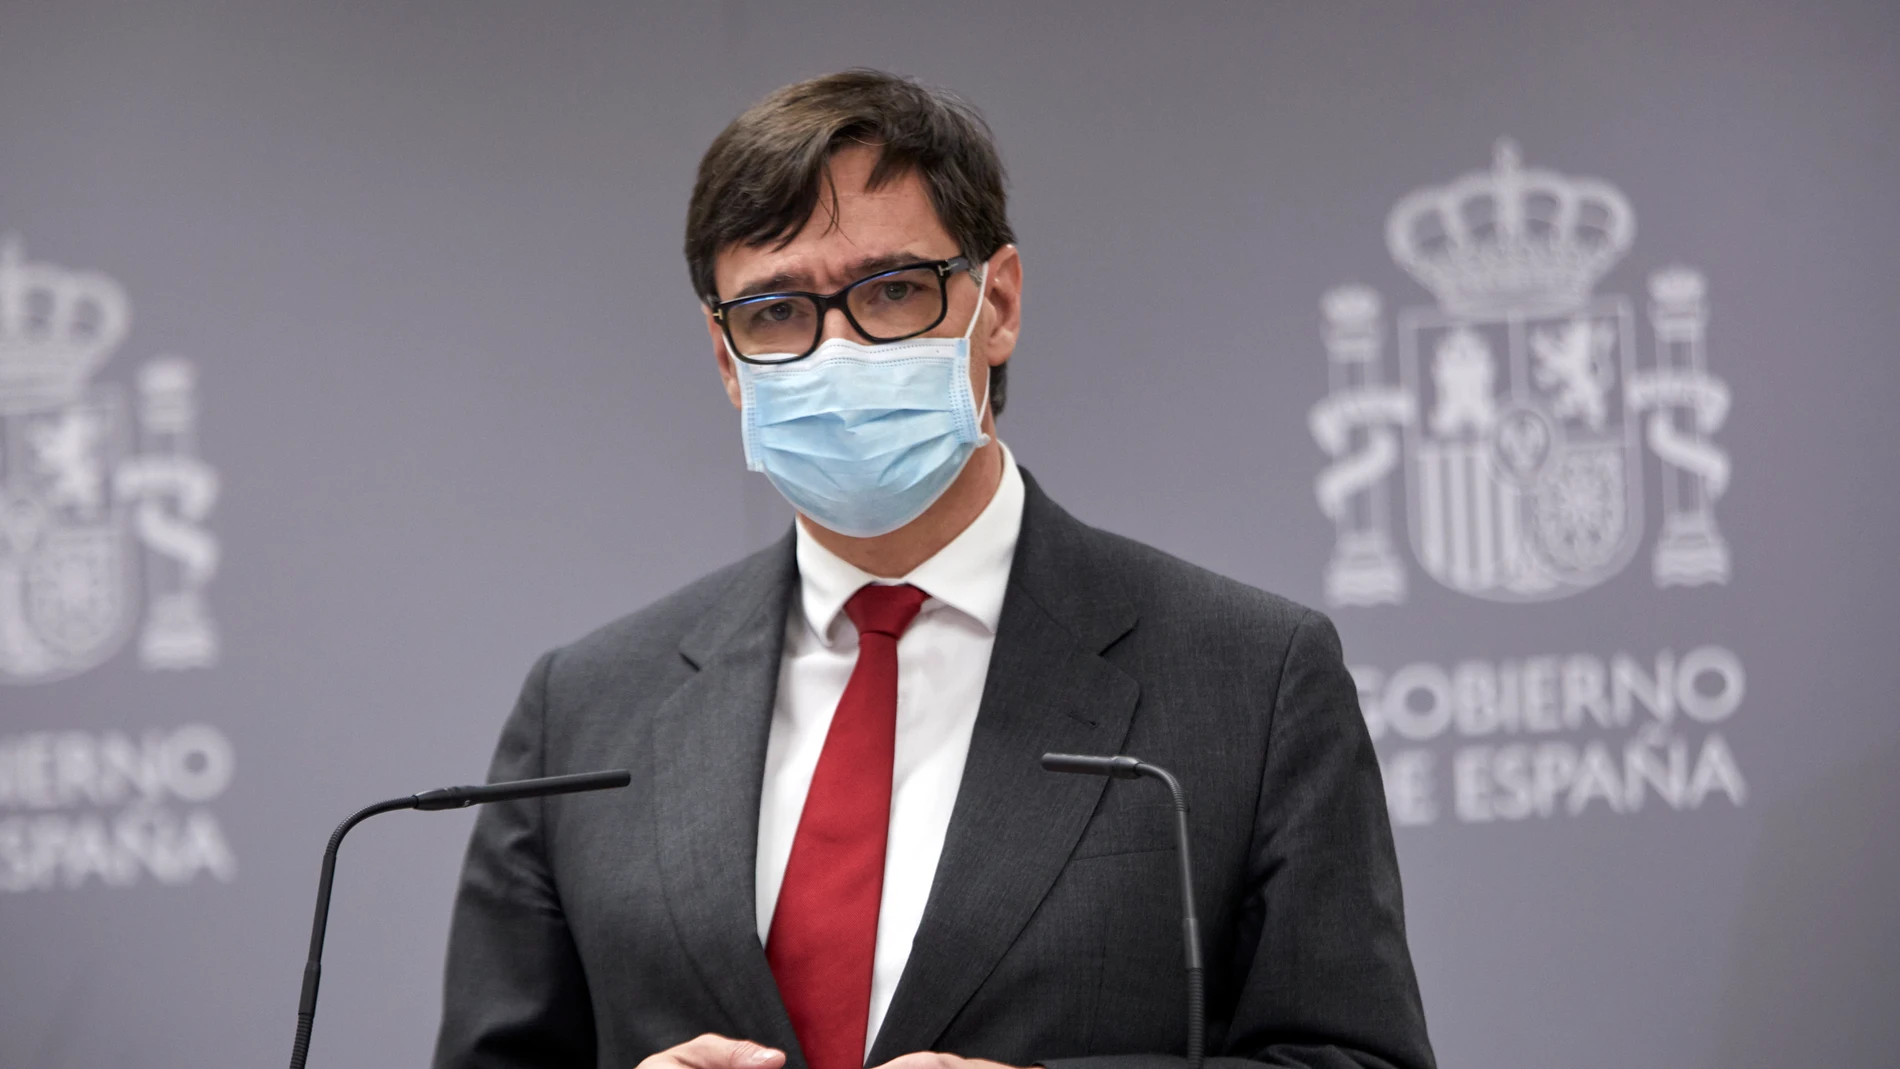 El exministro de Sanidad y actual candidato del PSC a las elecciones catalanas, Salvador Illa, interviene en el acto de traspaso de la cartera del Ministerio de Sanidad, en Madrid (España), a 27 de enero de 2021.